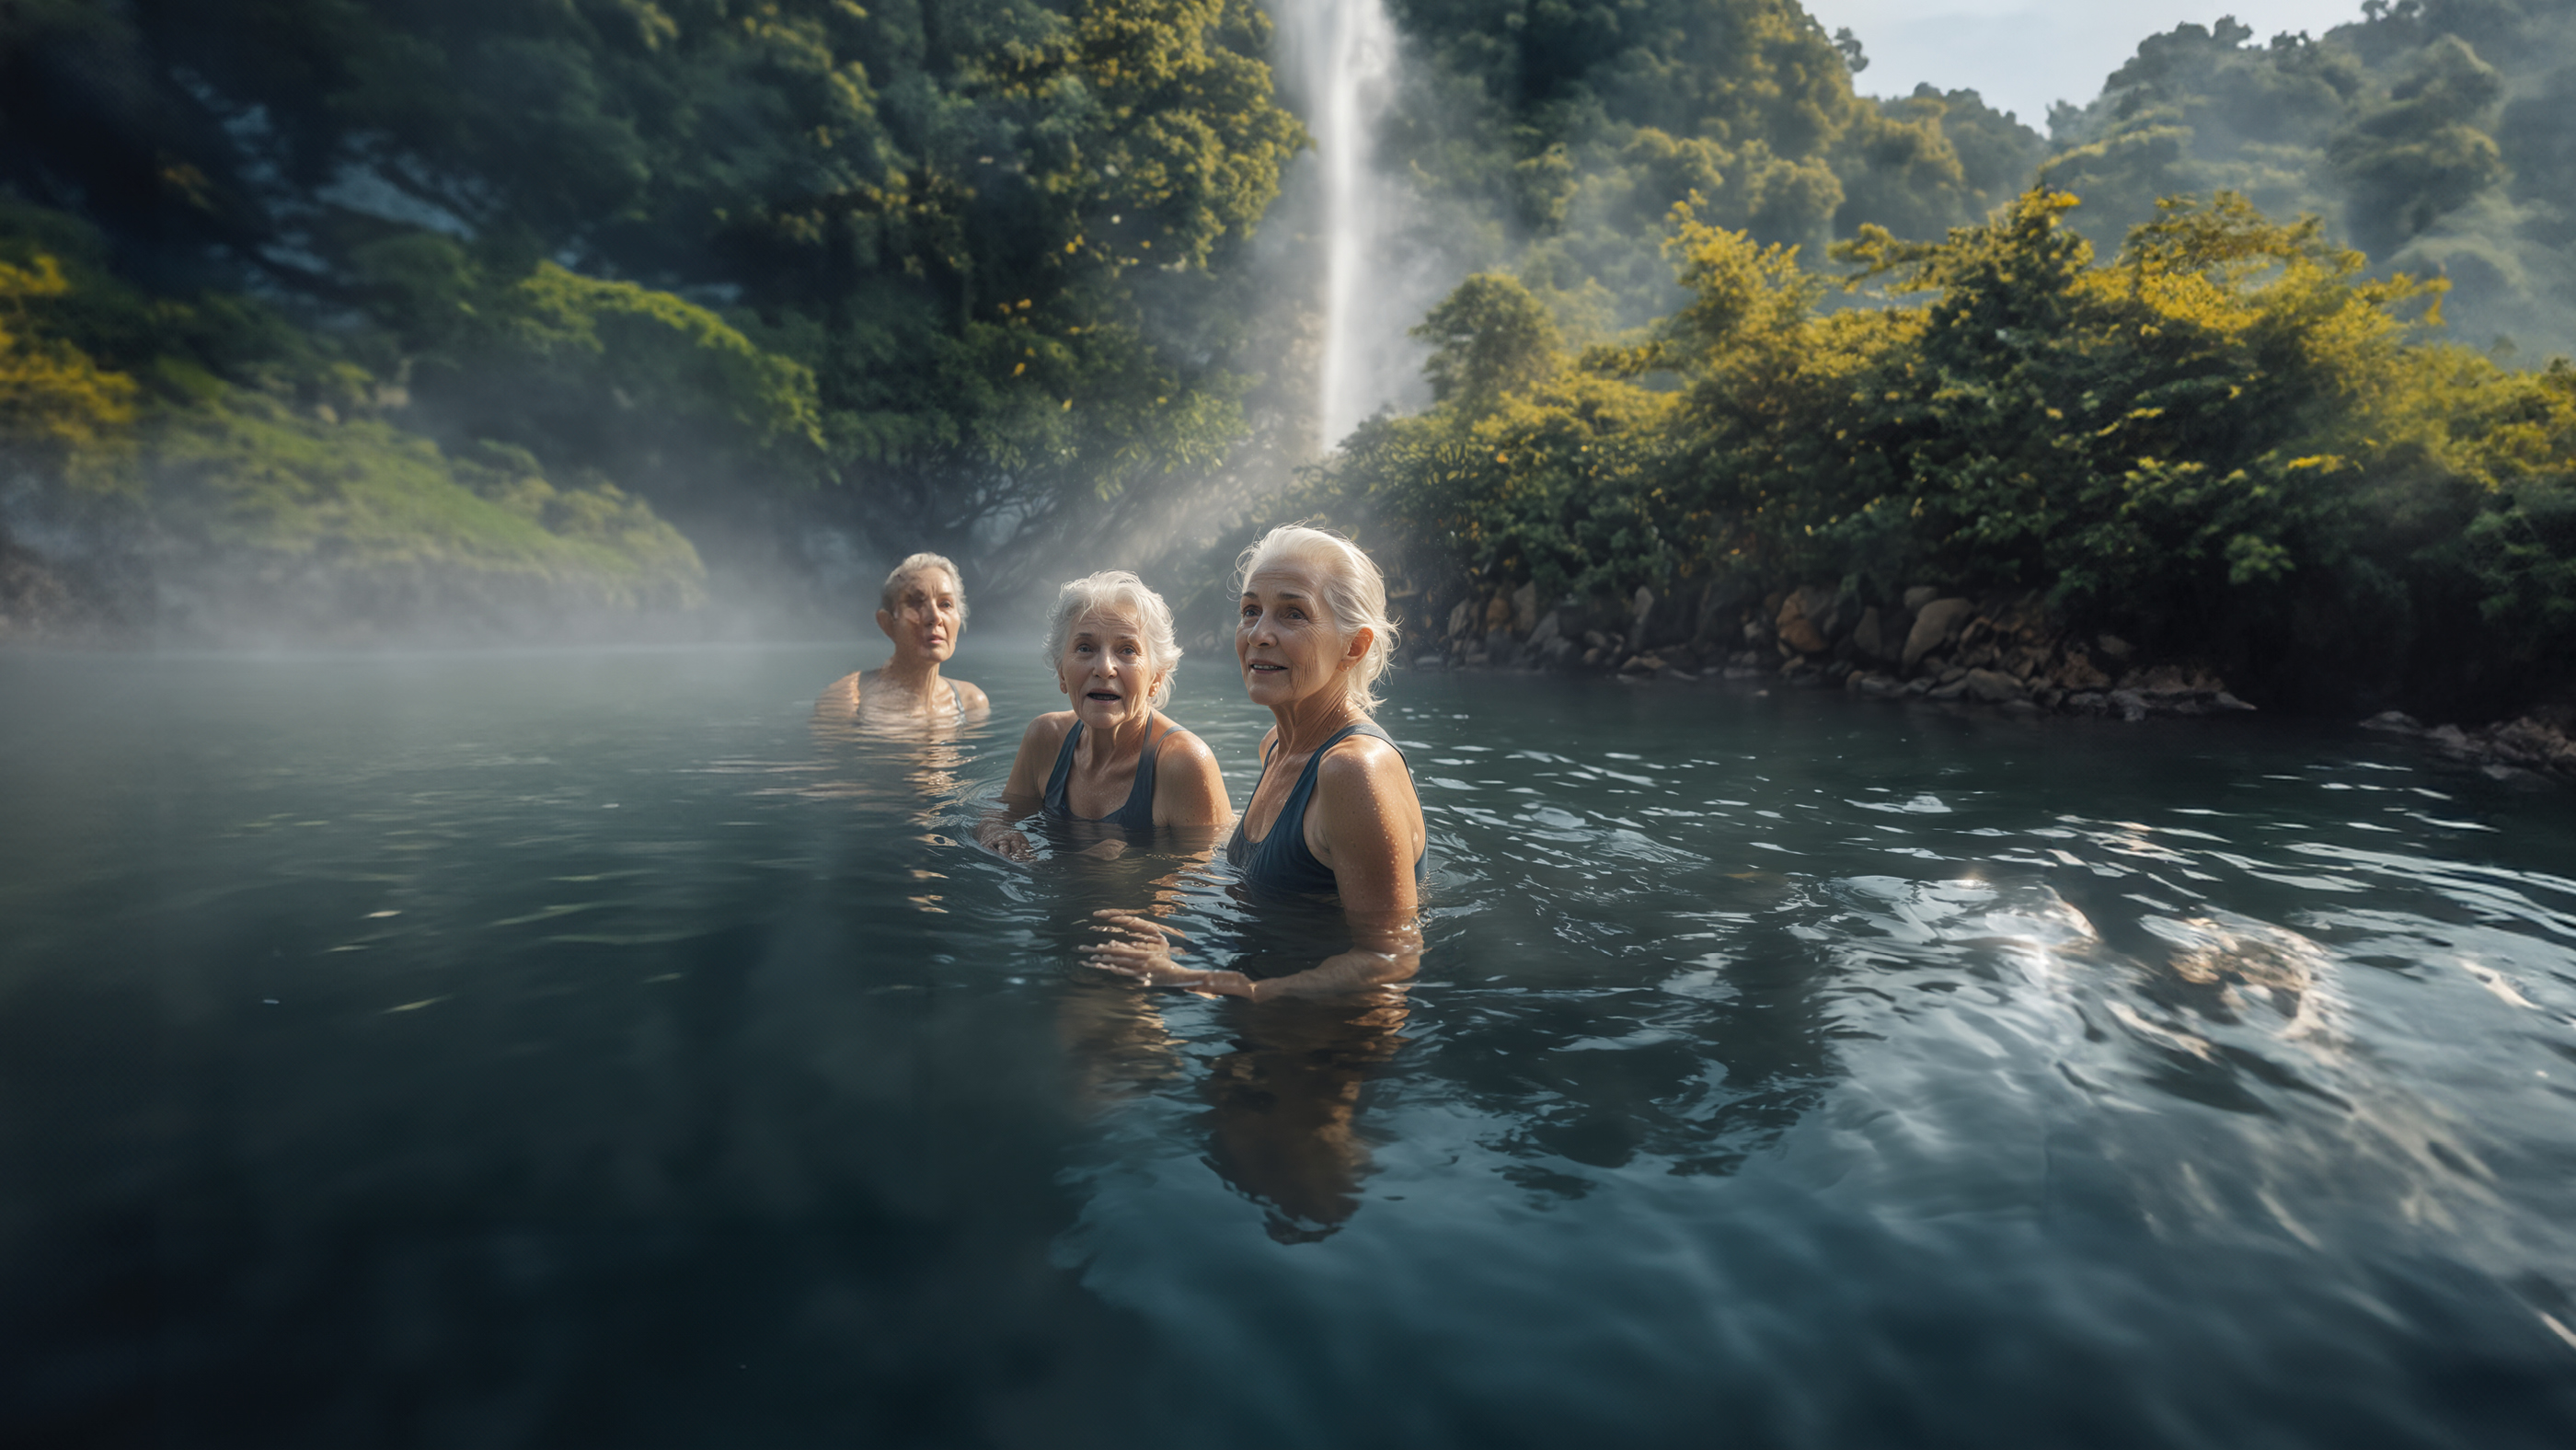 Trois femmes âgées se baignent dans un lac alors qu'une chute d'eau se produit derrière elles.